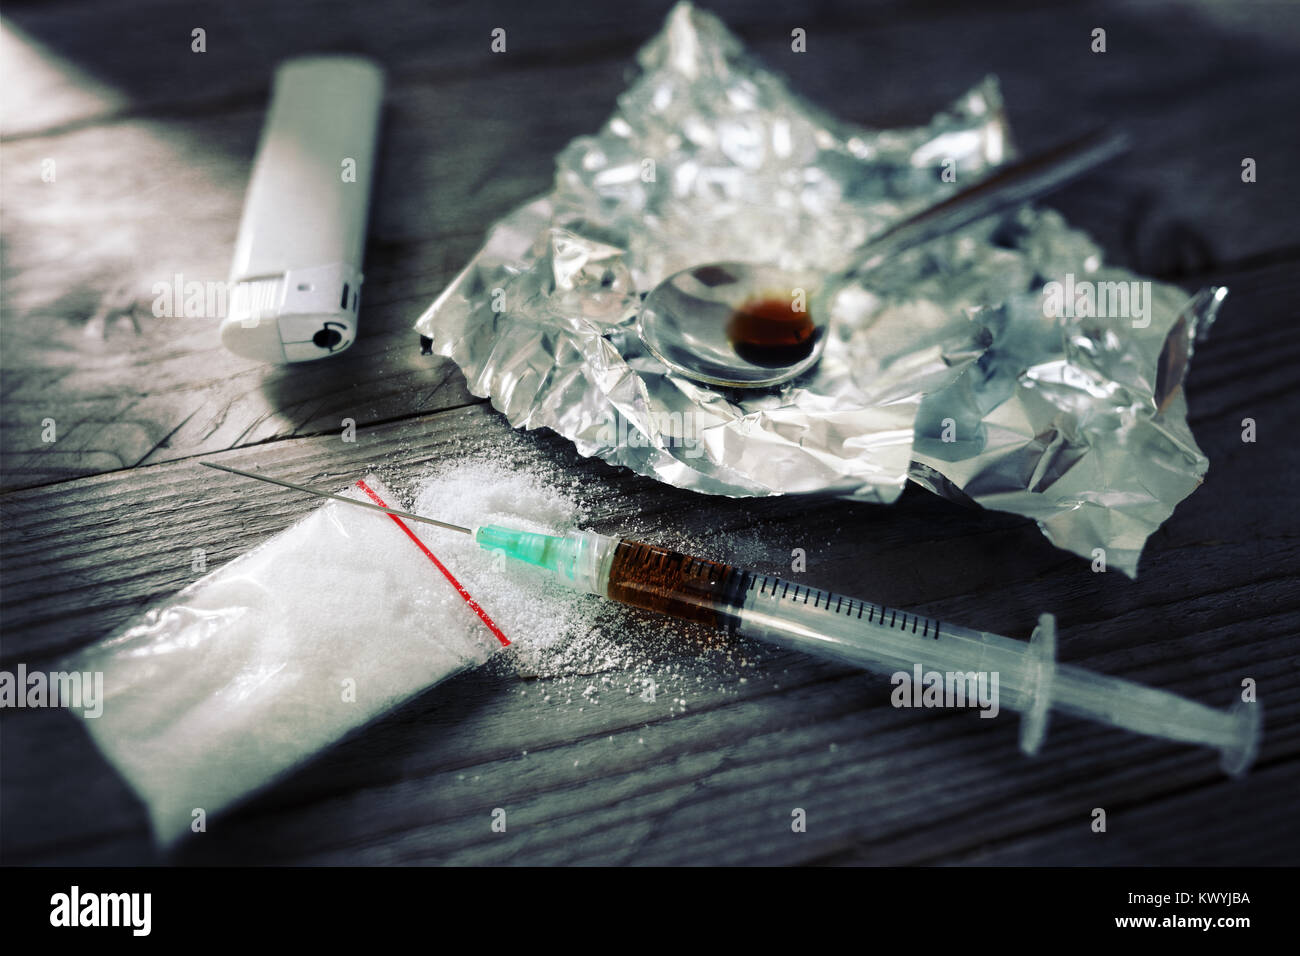 La tossicodipendenza siringa e cotte eroina sul cucchiaio Foto Stock